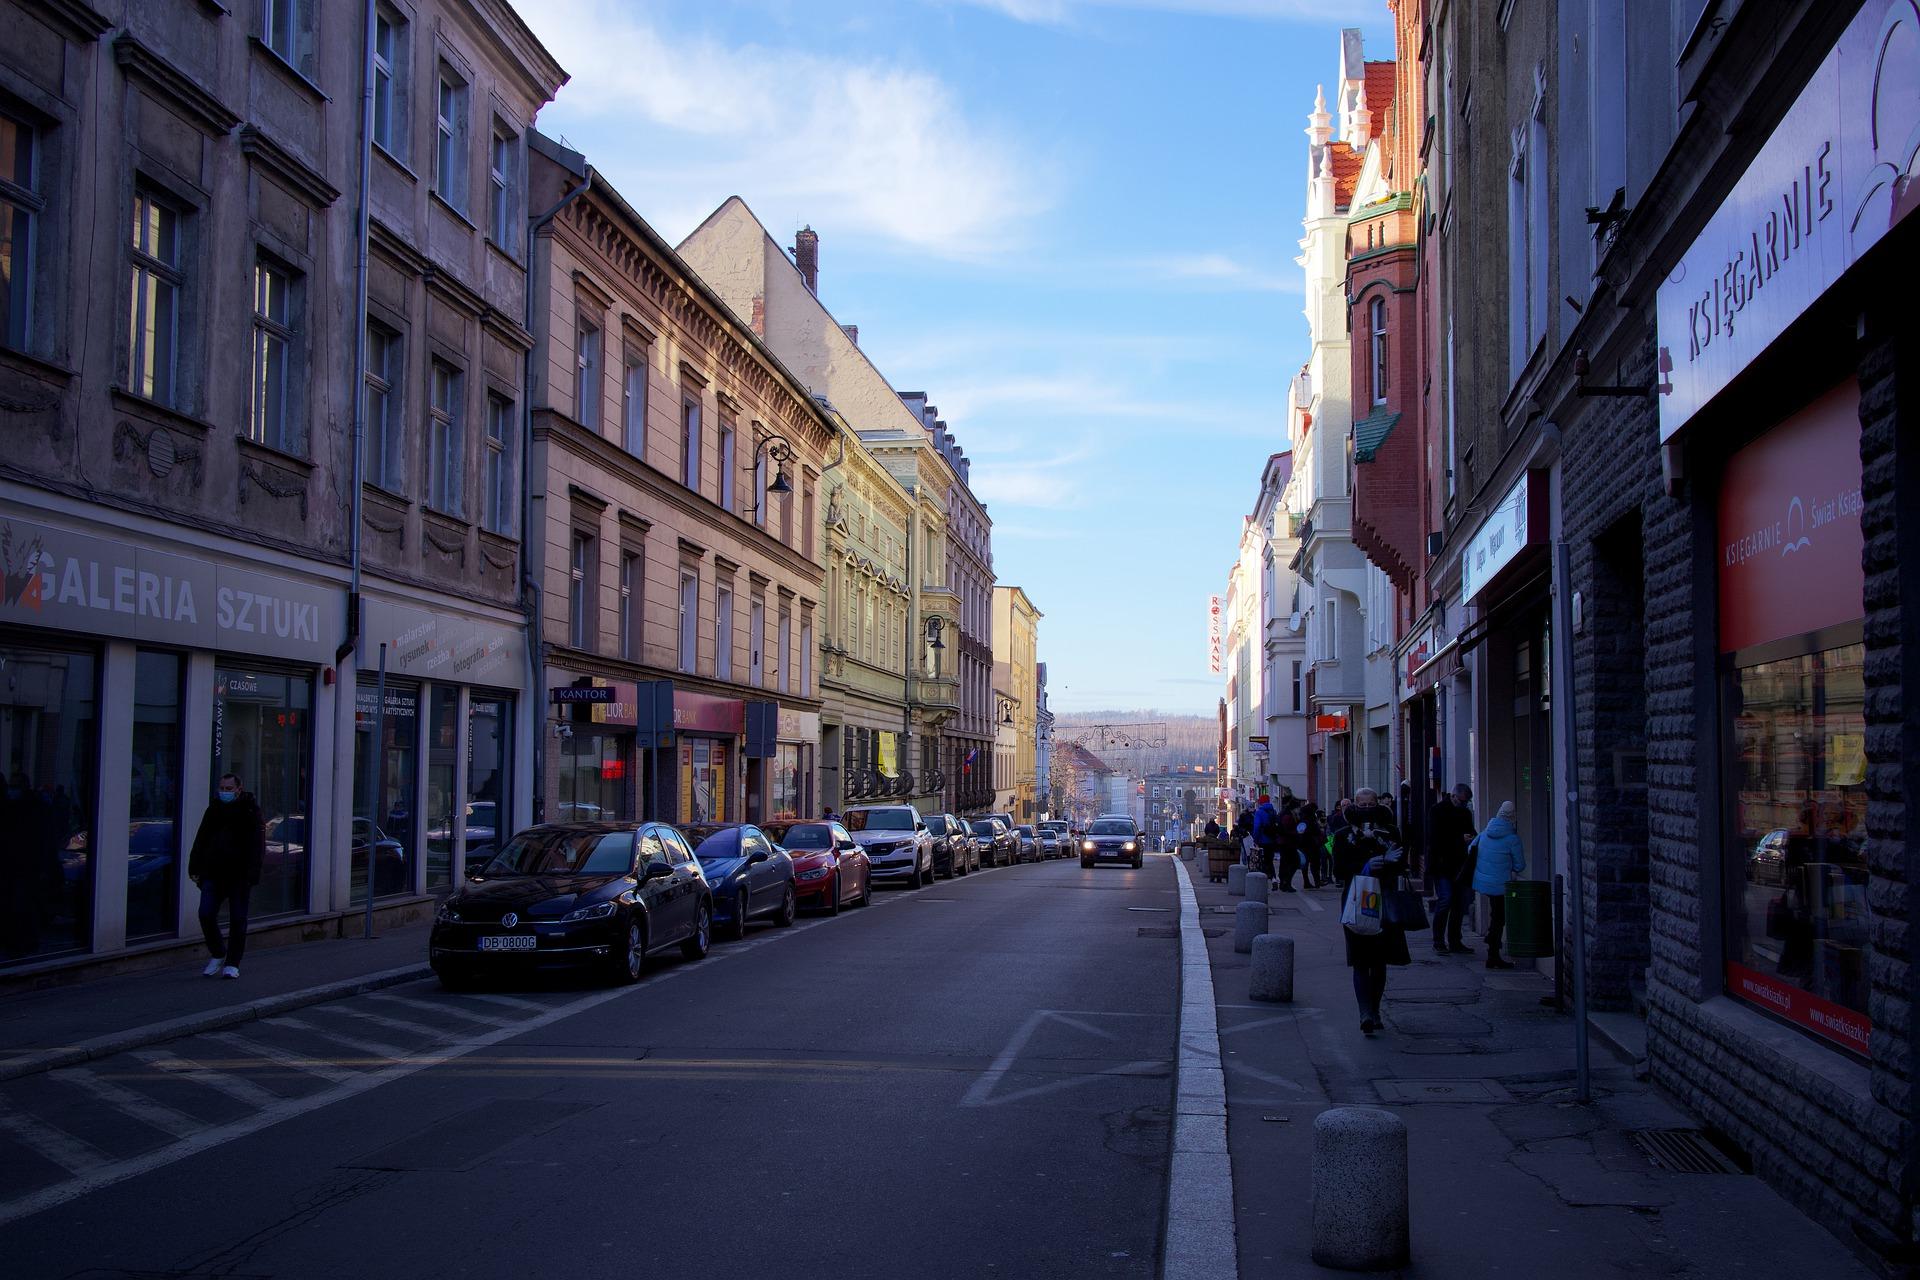 ulicza z zabytkowymi kamienicami w centrum miasta